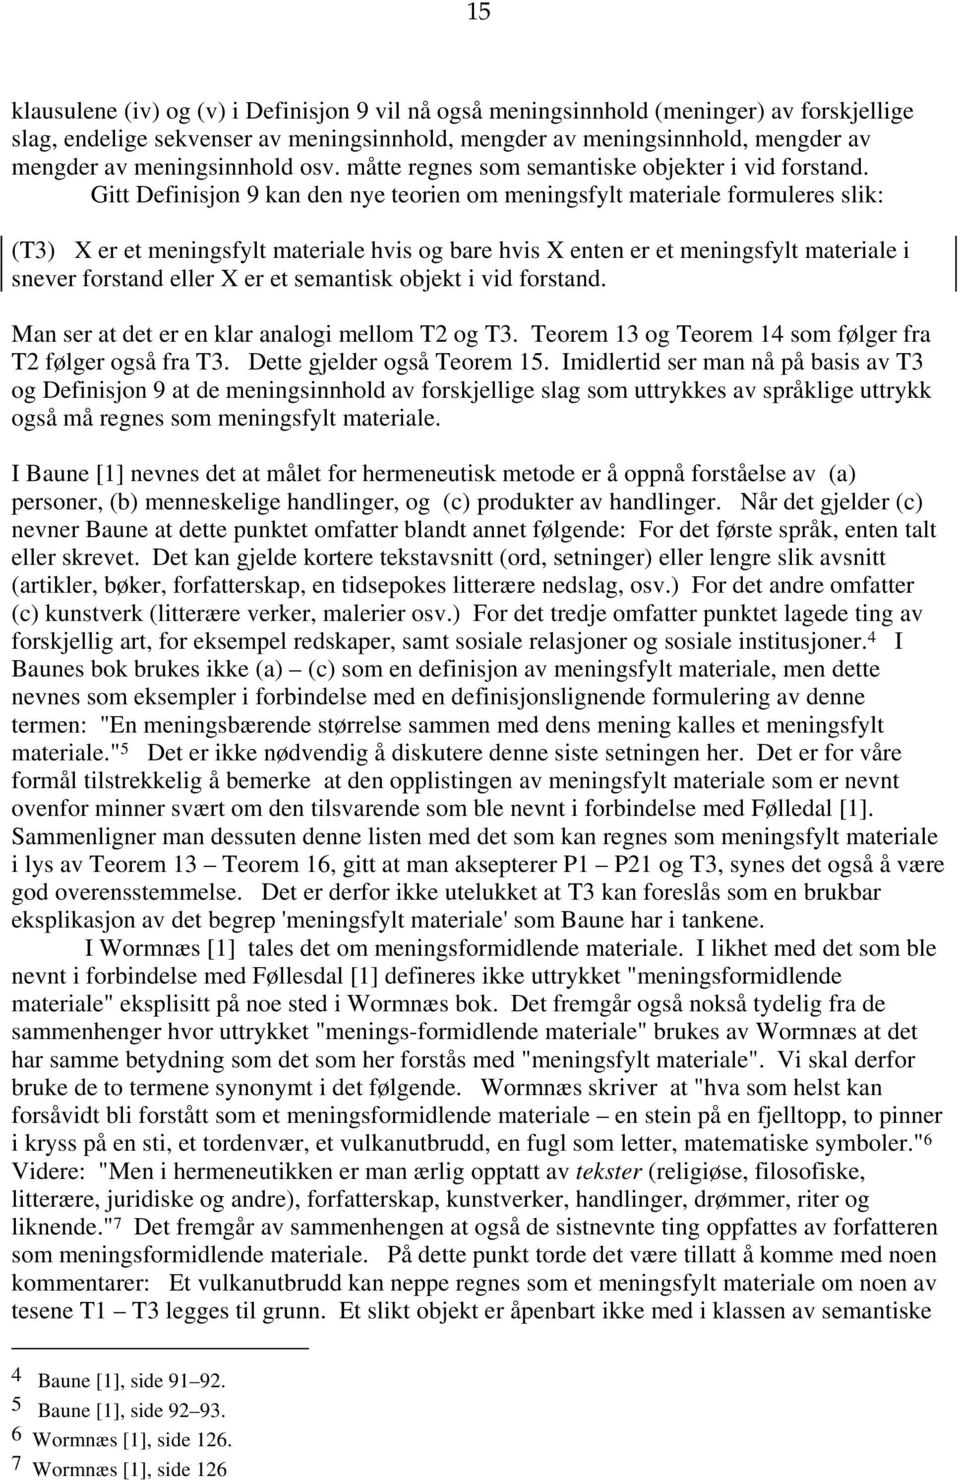 Gitt Definisjon 9 kan den nye teorien om meningsfylt materiale formuleres slik: (T3) X er et meningsfylt materiale hvis og bare hvis X enten er et meningsfylt materiale i snever forstand eller X er